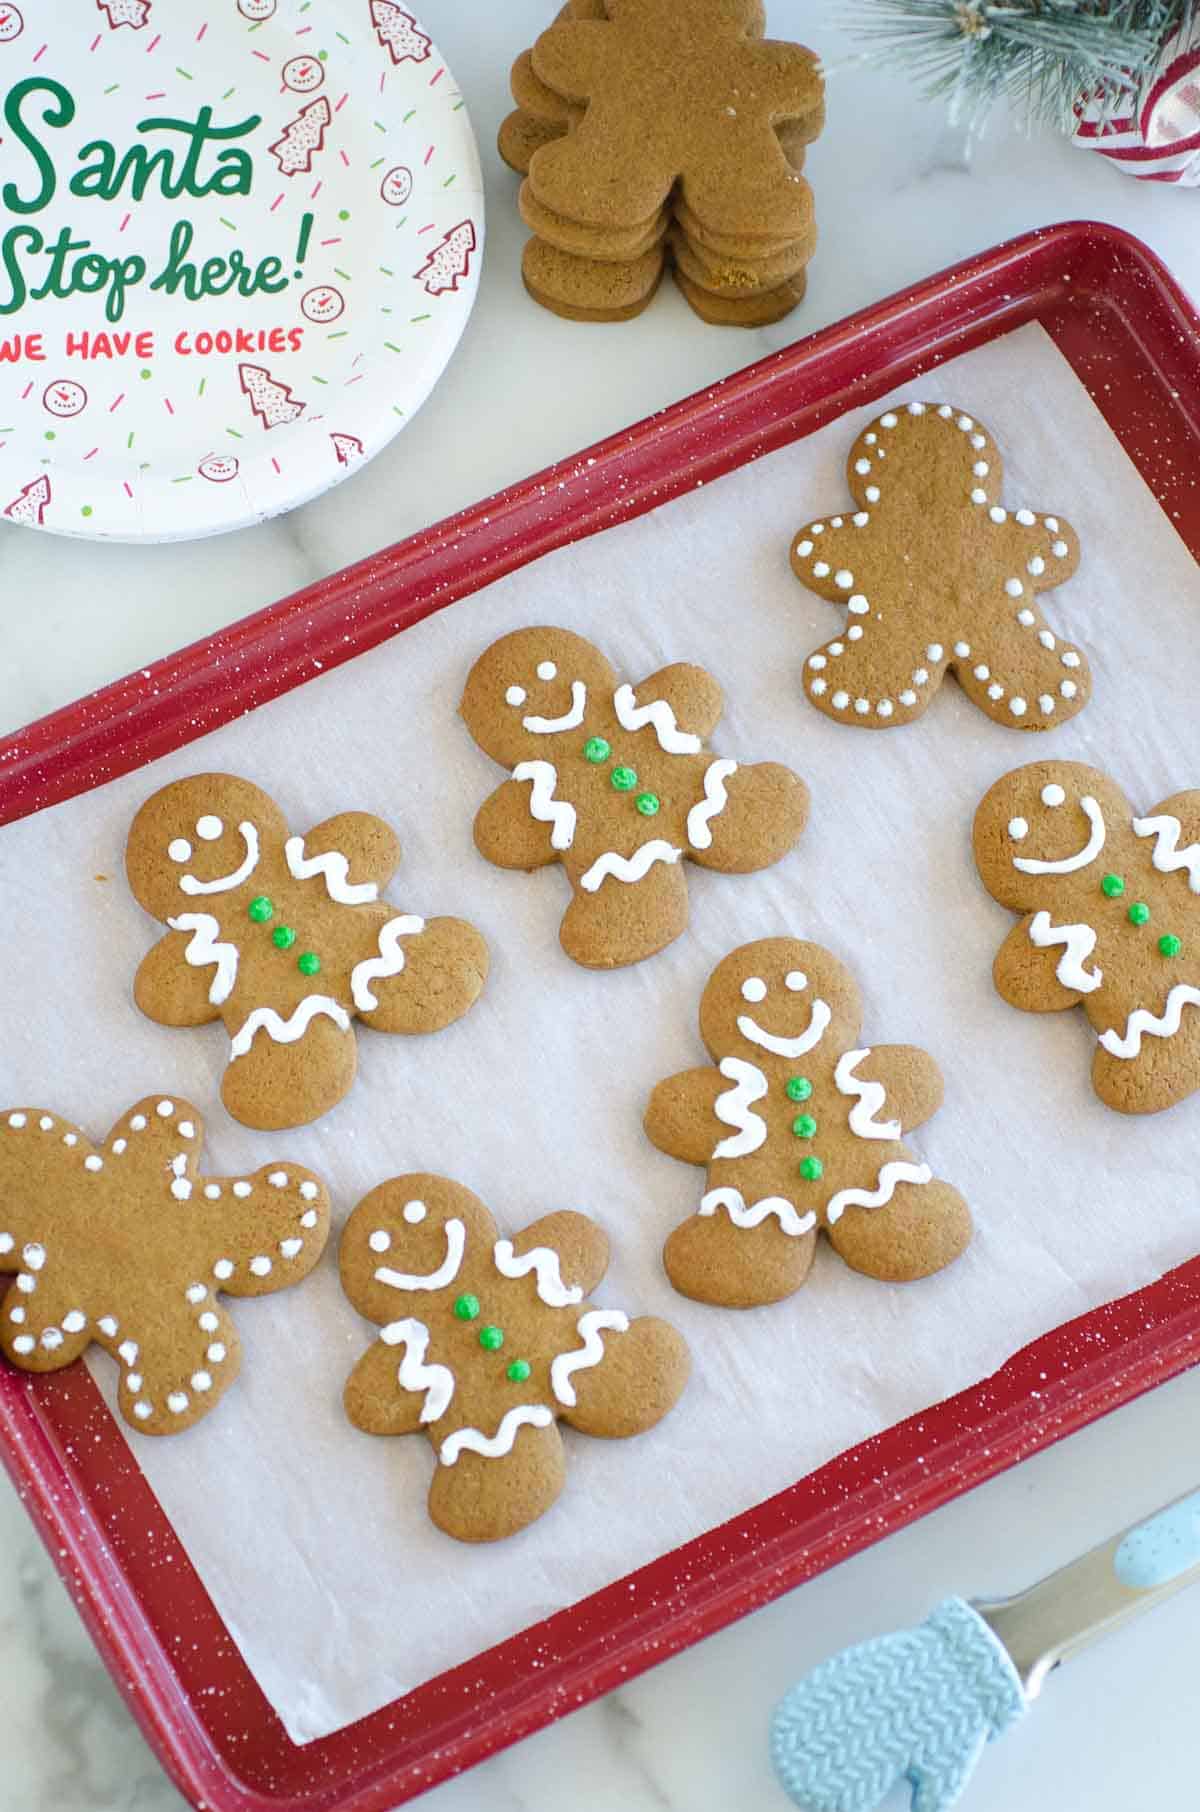 https://www.seededatthetable.com/wp-content/uploads/2020/12/Gingerbread-Cookie-Recipe-UPDATED-7.jpg